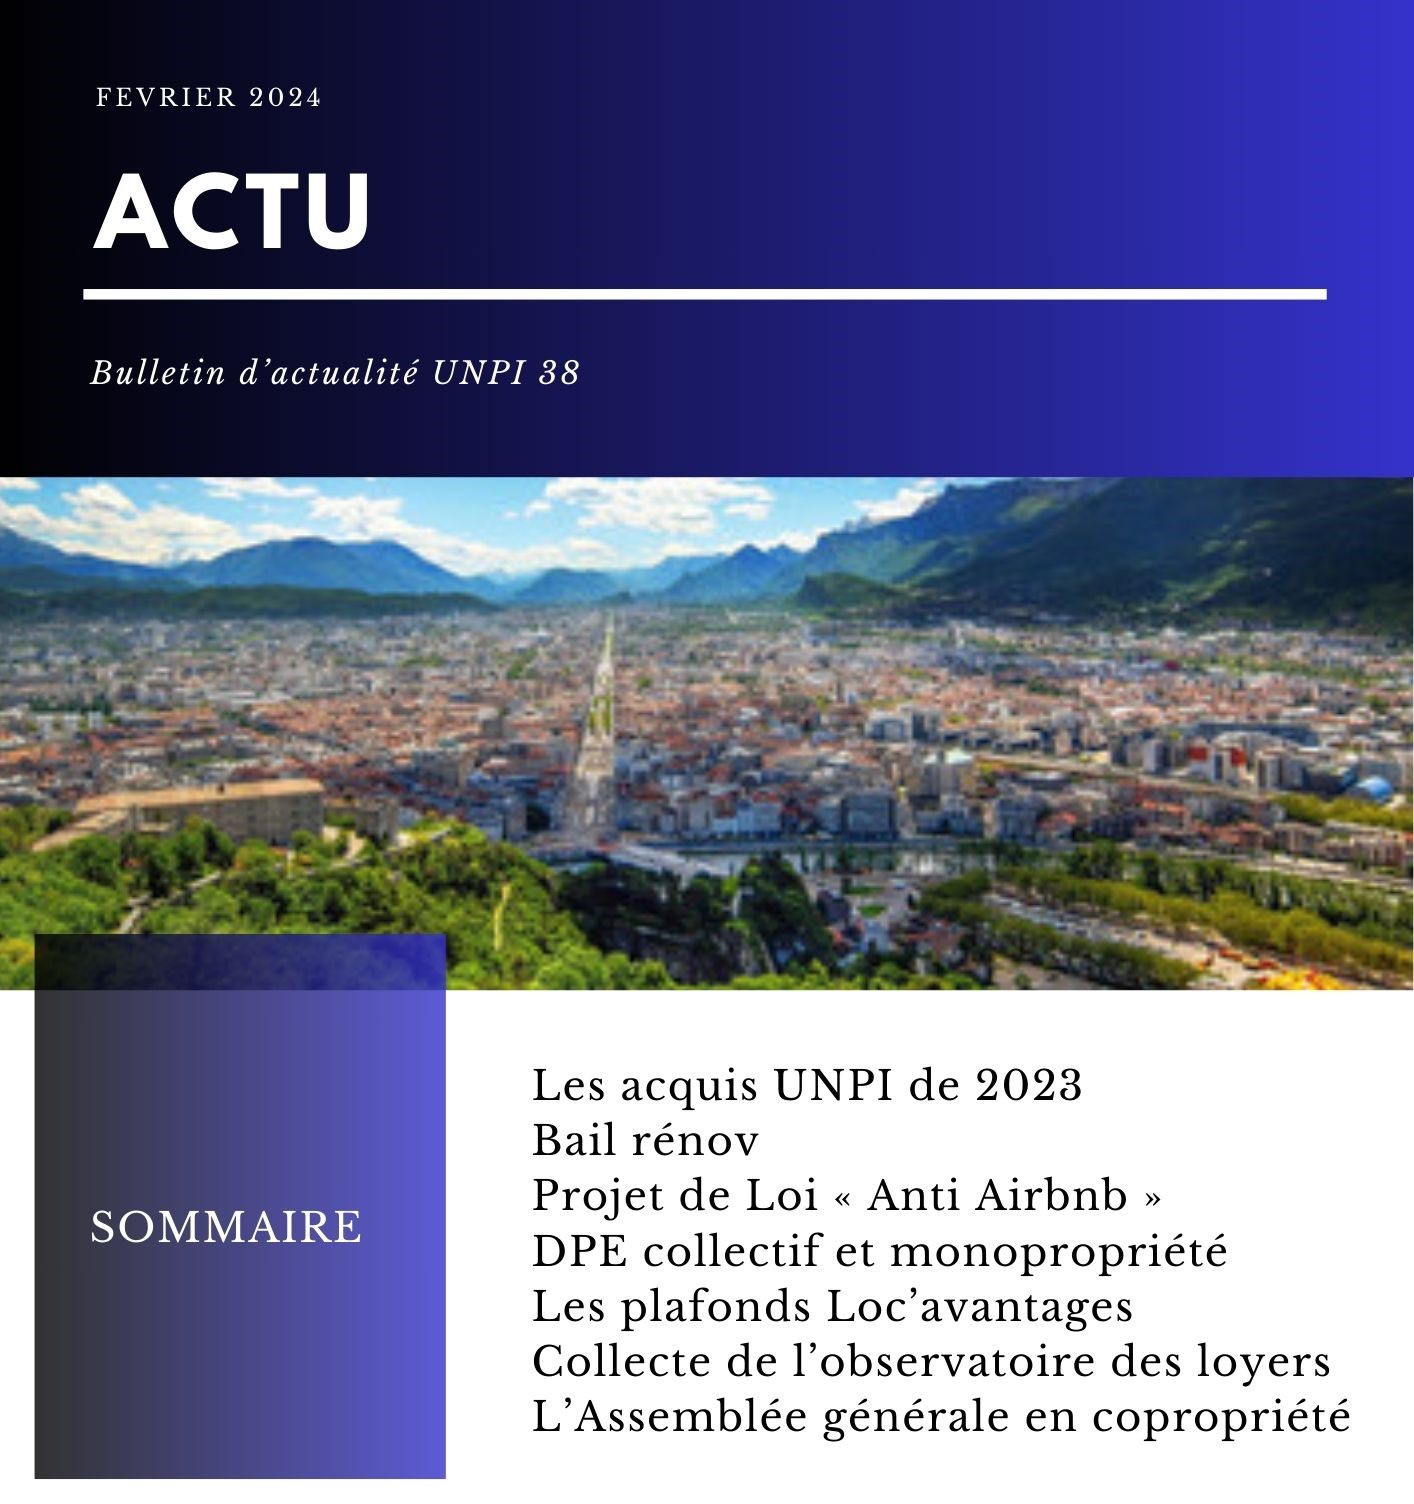 L'ACTU bulletin d'information février 2024